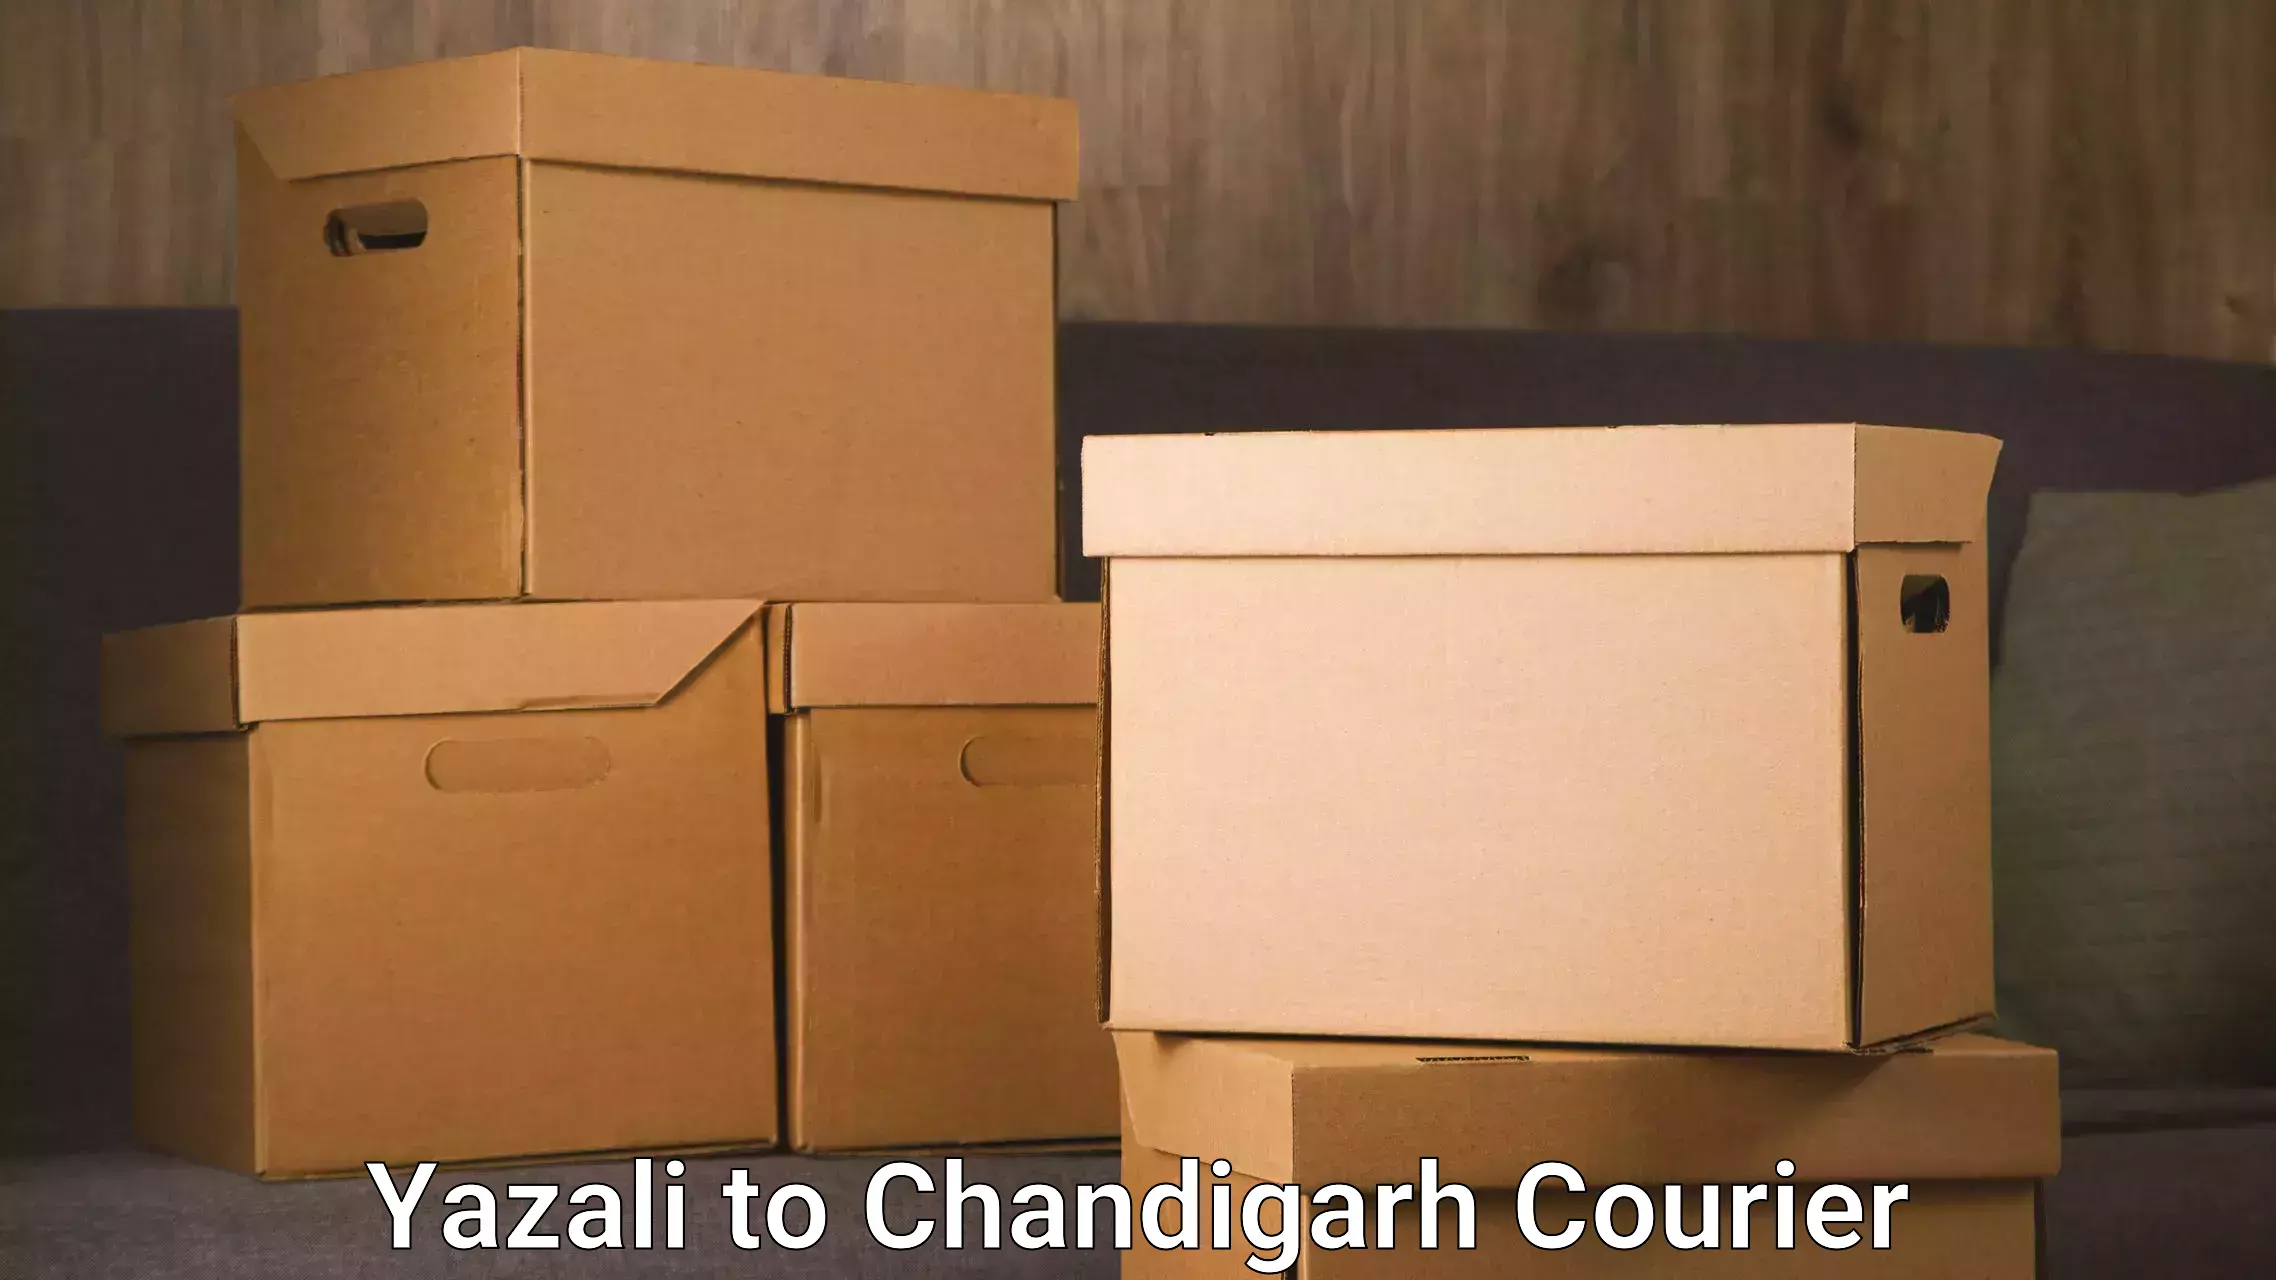 Urban courier service Yazali to Chandigarh